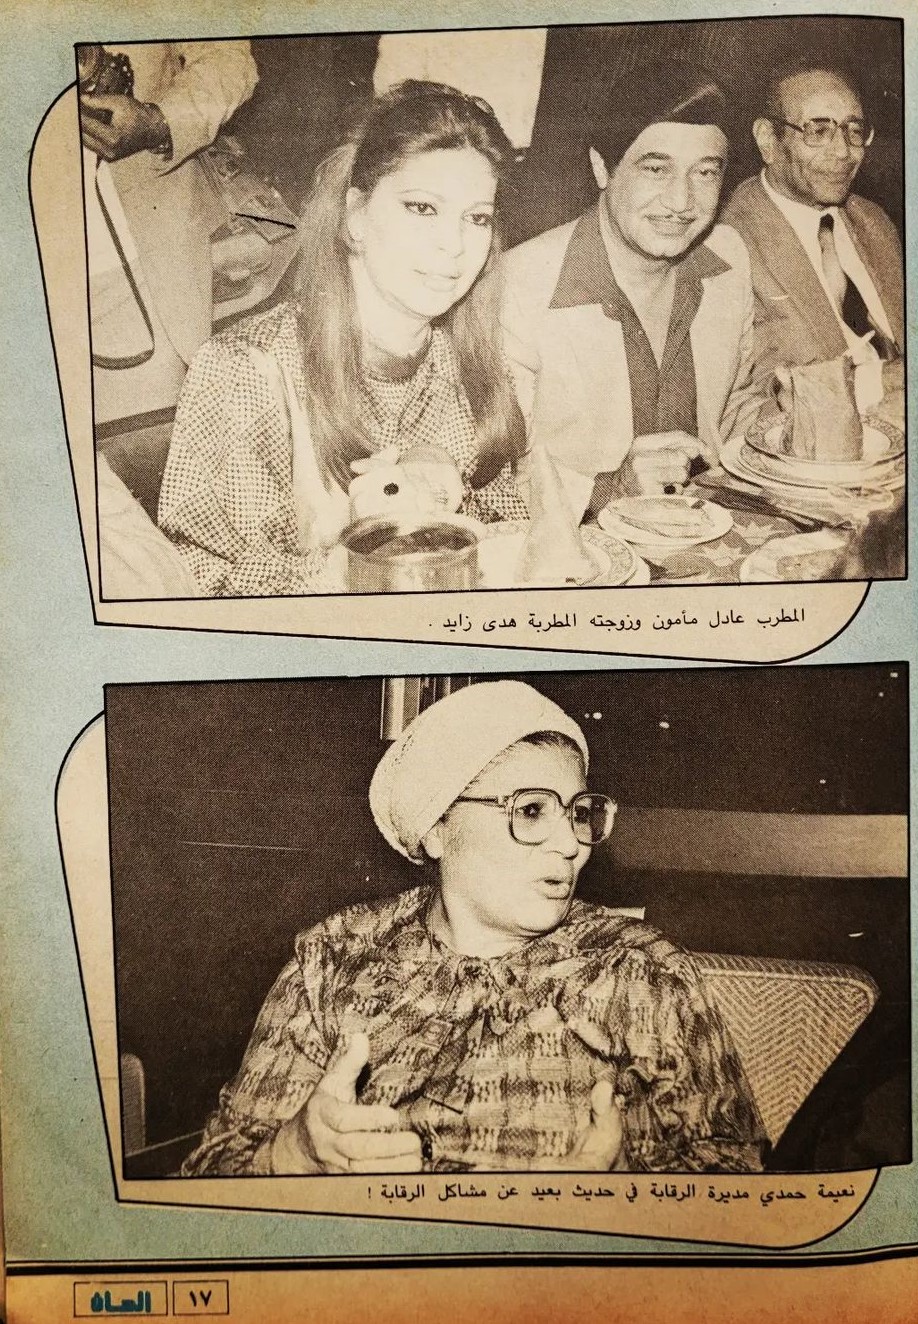 1986 - خبر صحفي : سندريللا الشاشتين .. في احتفال جمعية فناني الشاشة الصغيرة 1986 م 440